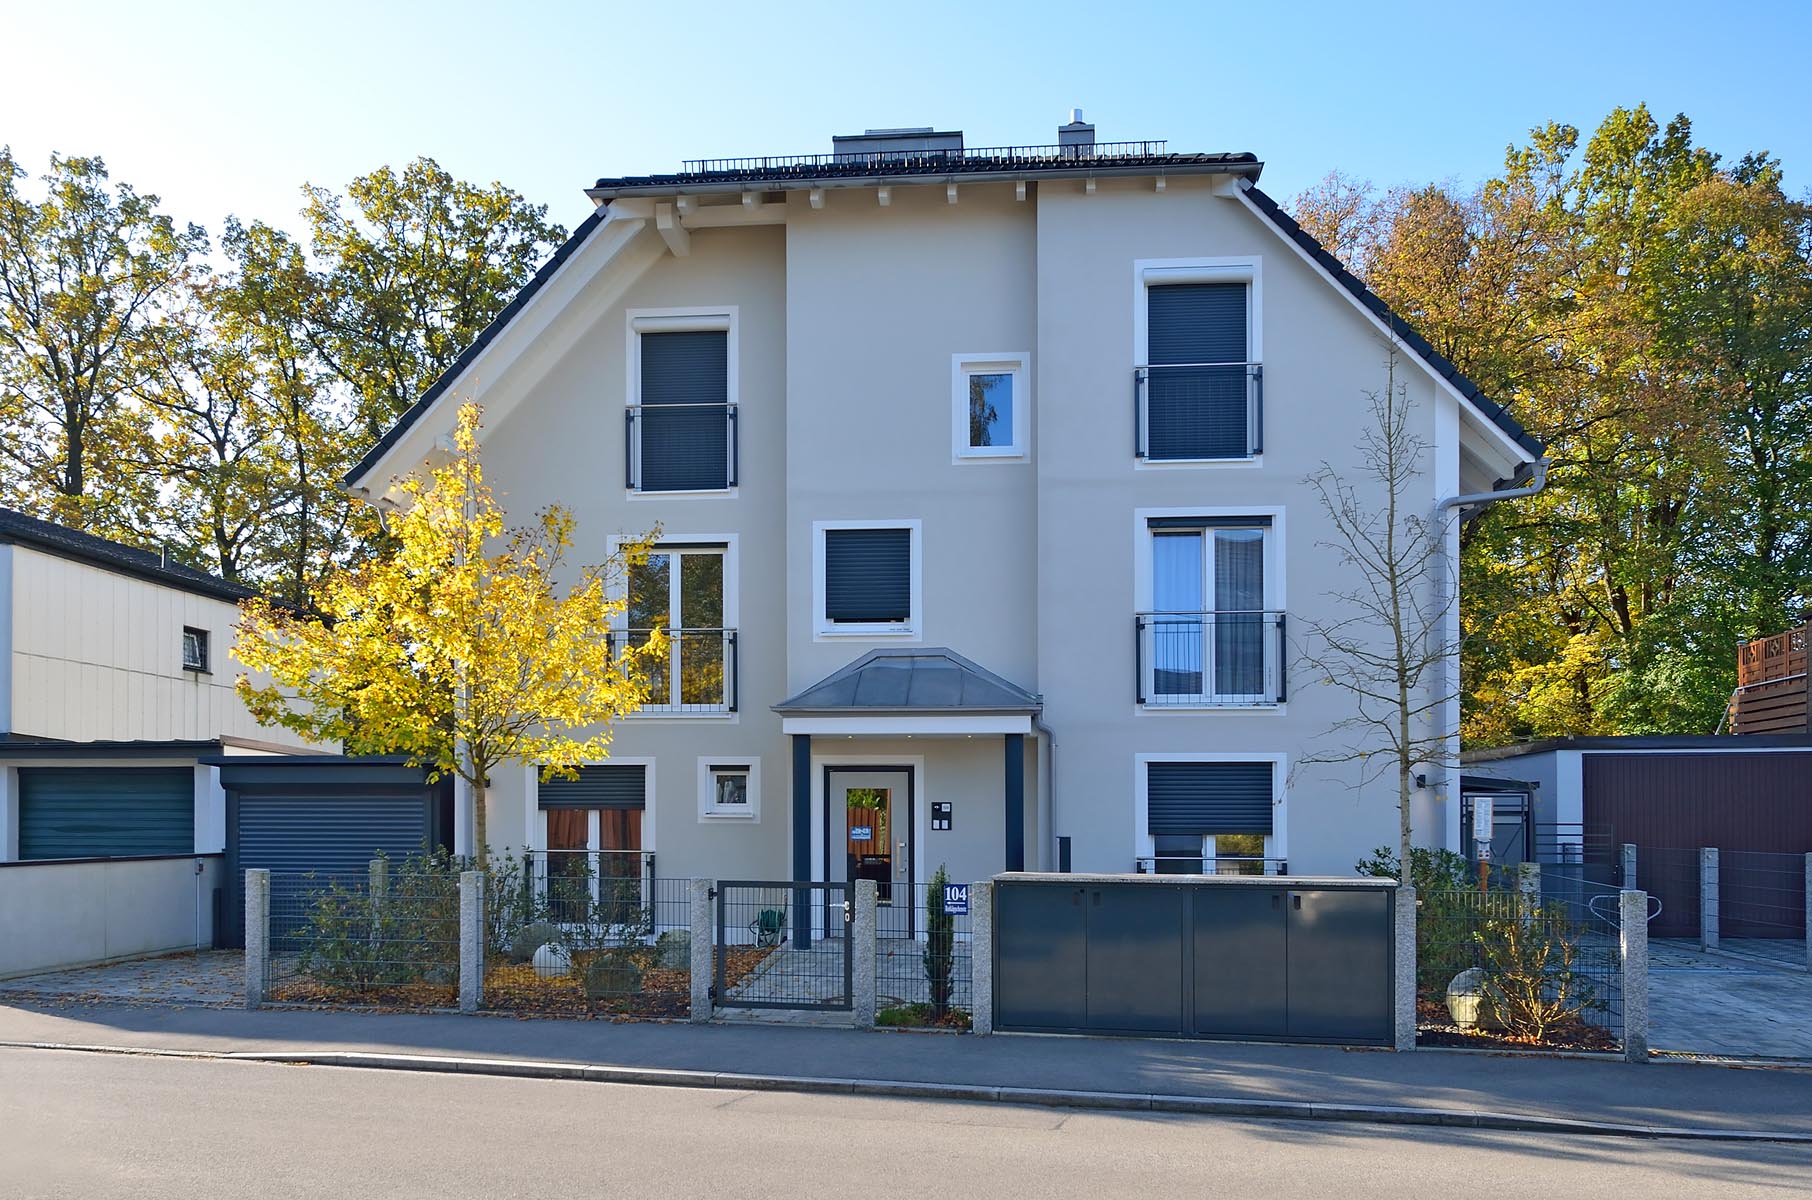 Rotkäppchenstraße 104 5 Familienhaus (BJ 2015)